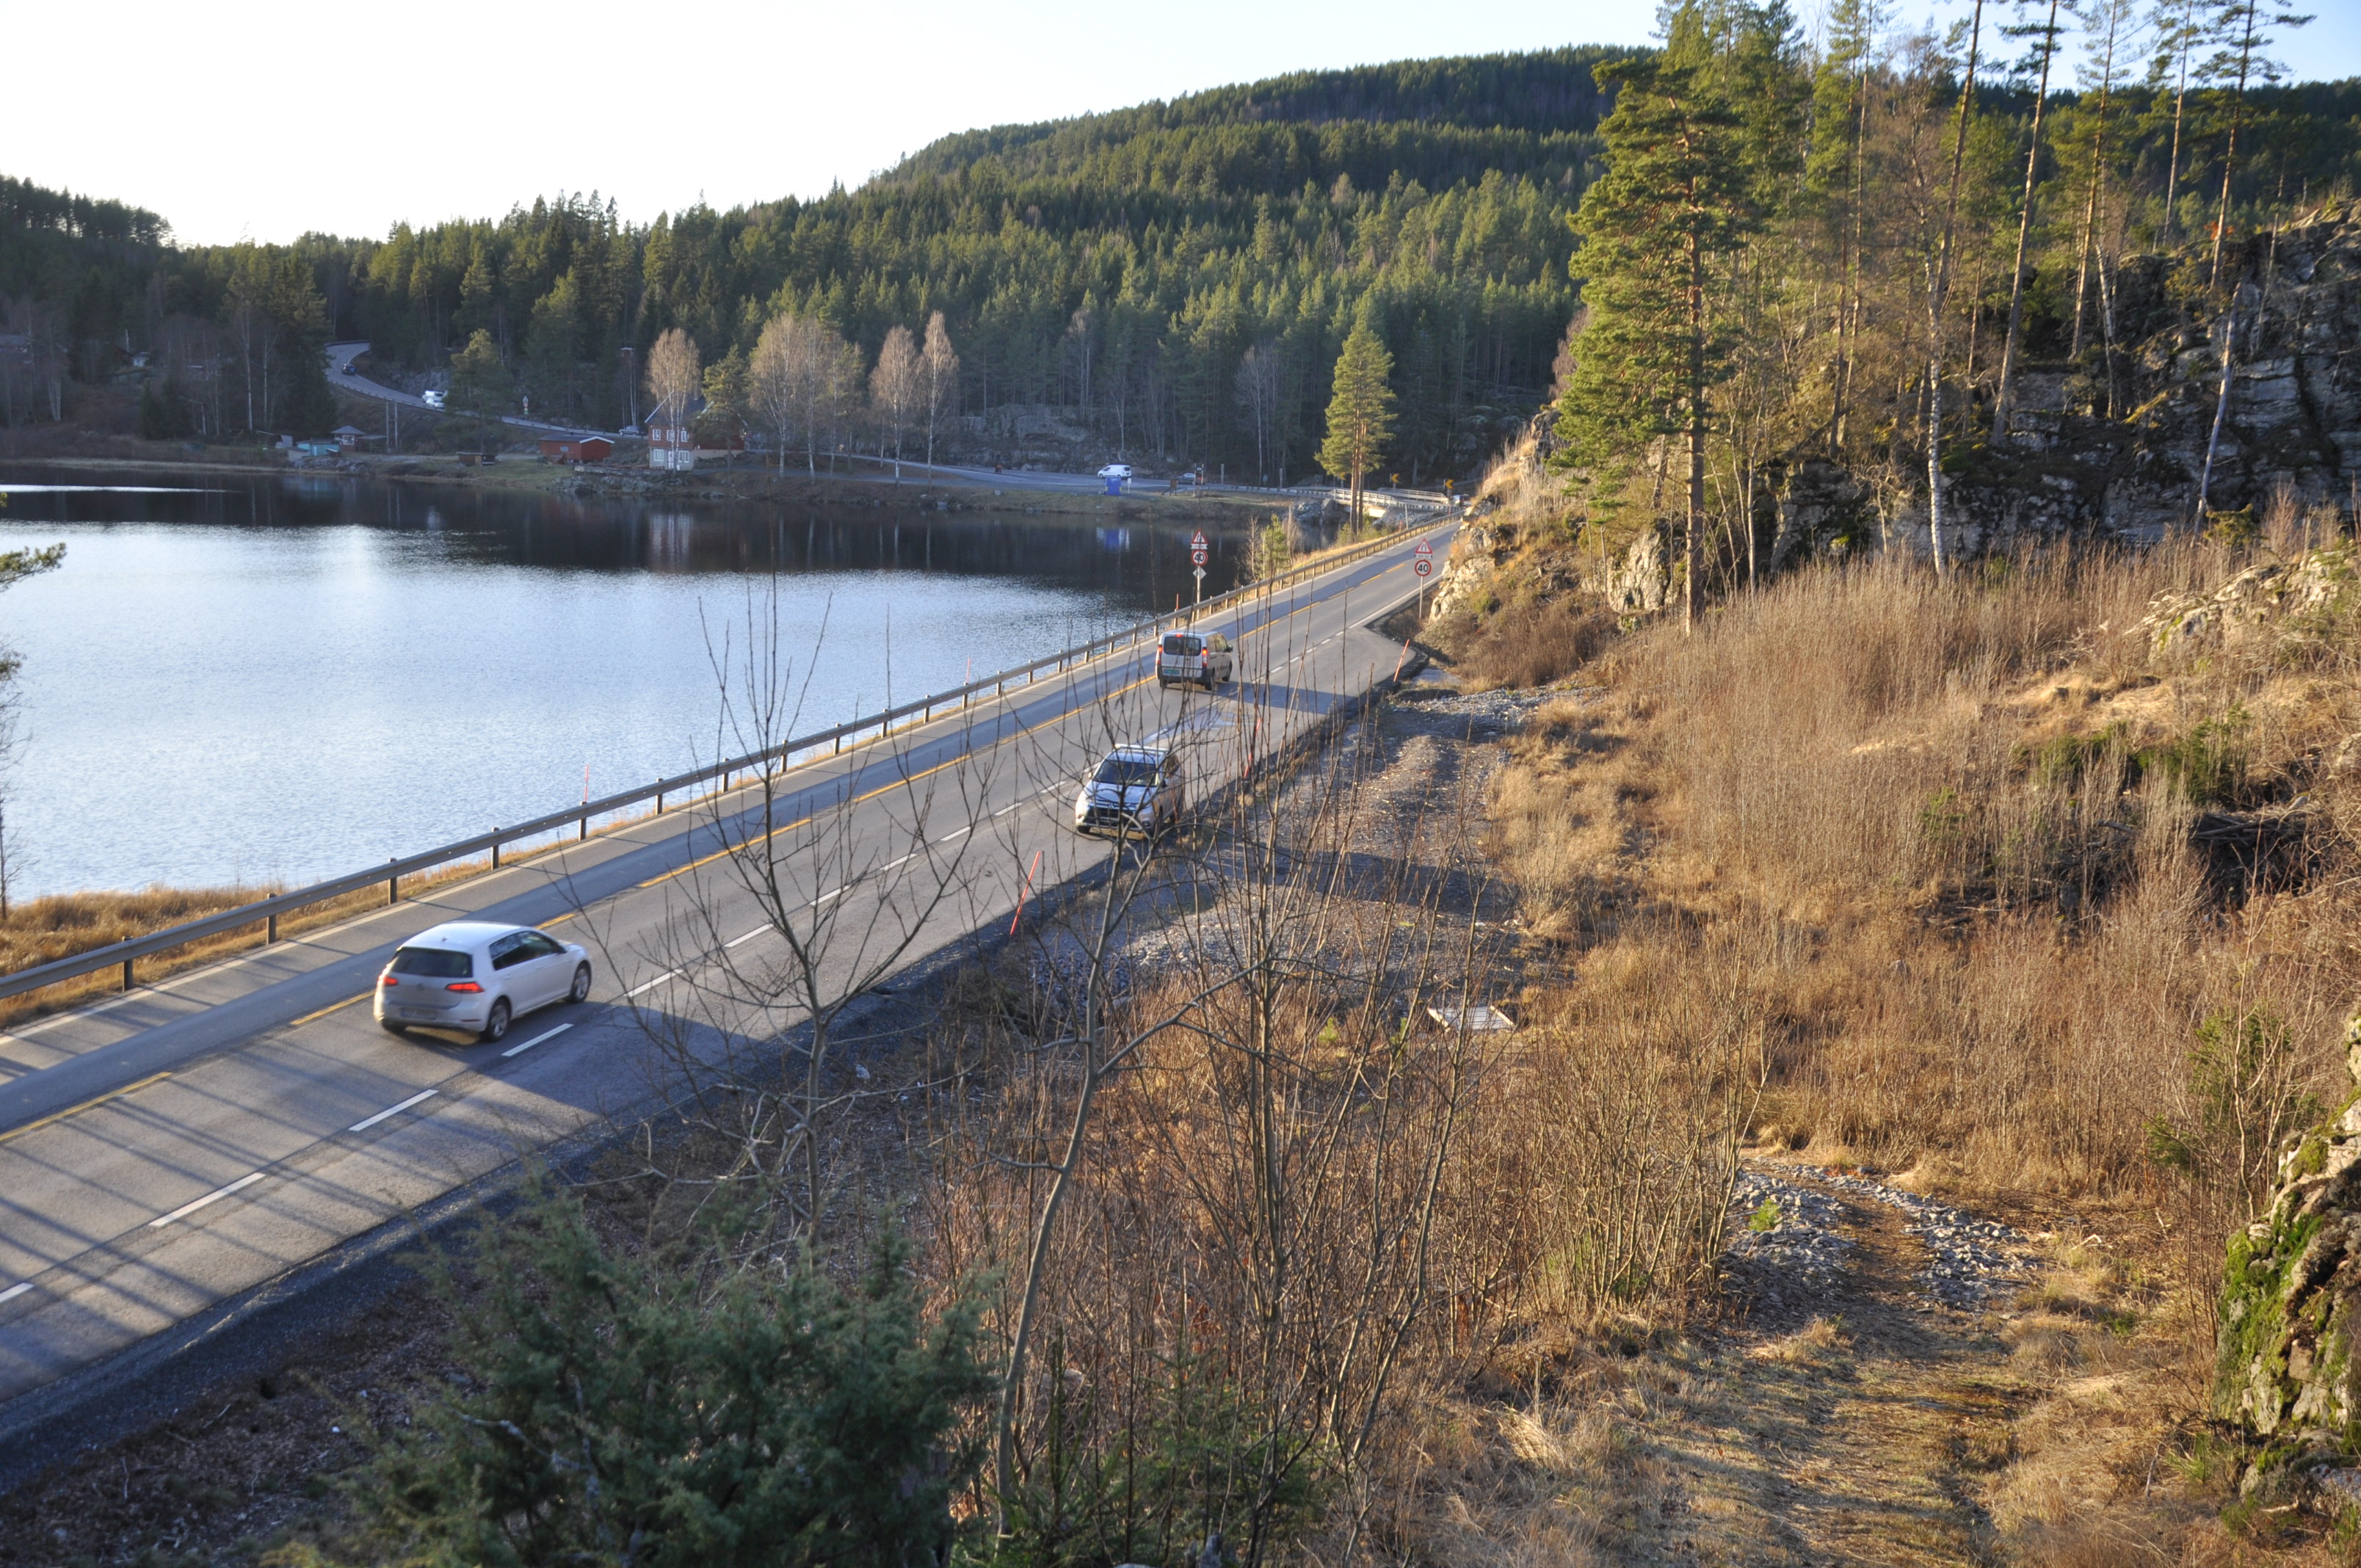 Her ved Elgsjø skal ny E134 gå gjennom verdifull naturfuruskog. (Foto: Kjell Wold)